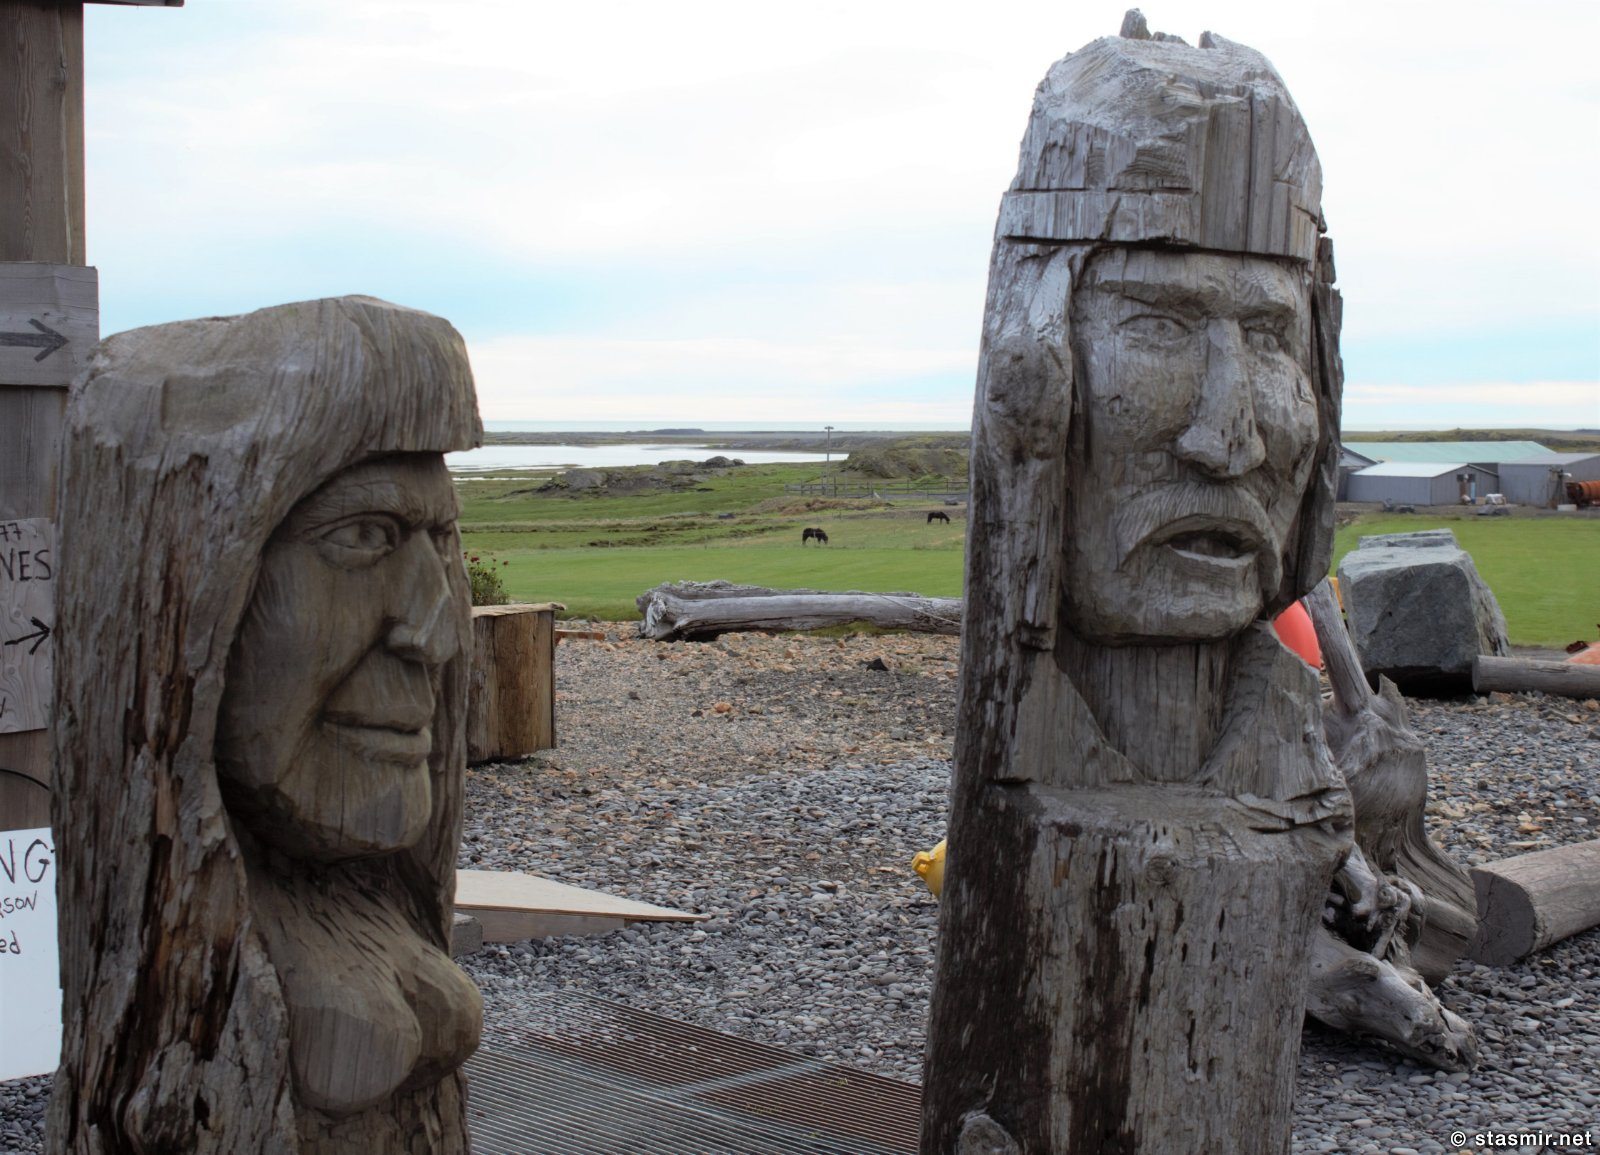 резные фигурки викингов, Восточная Исландия, фото Стасмир, photo Stasmir